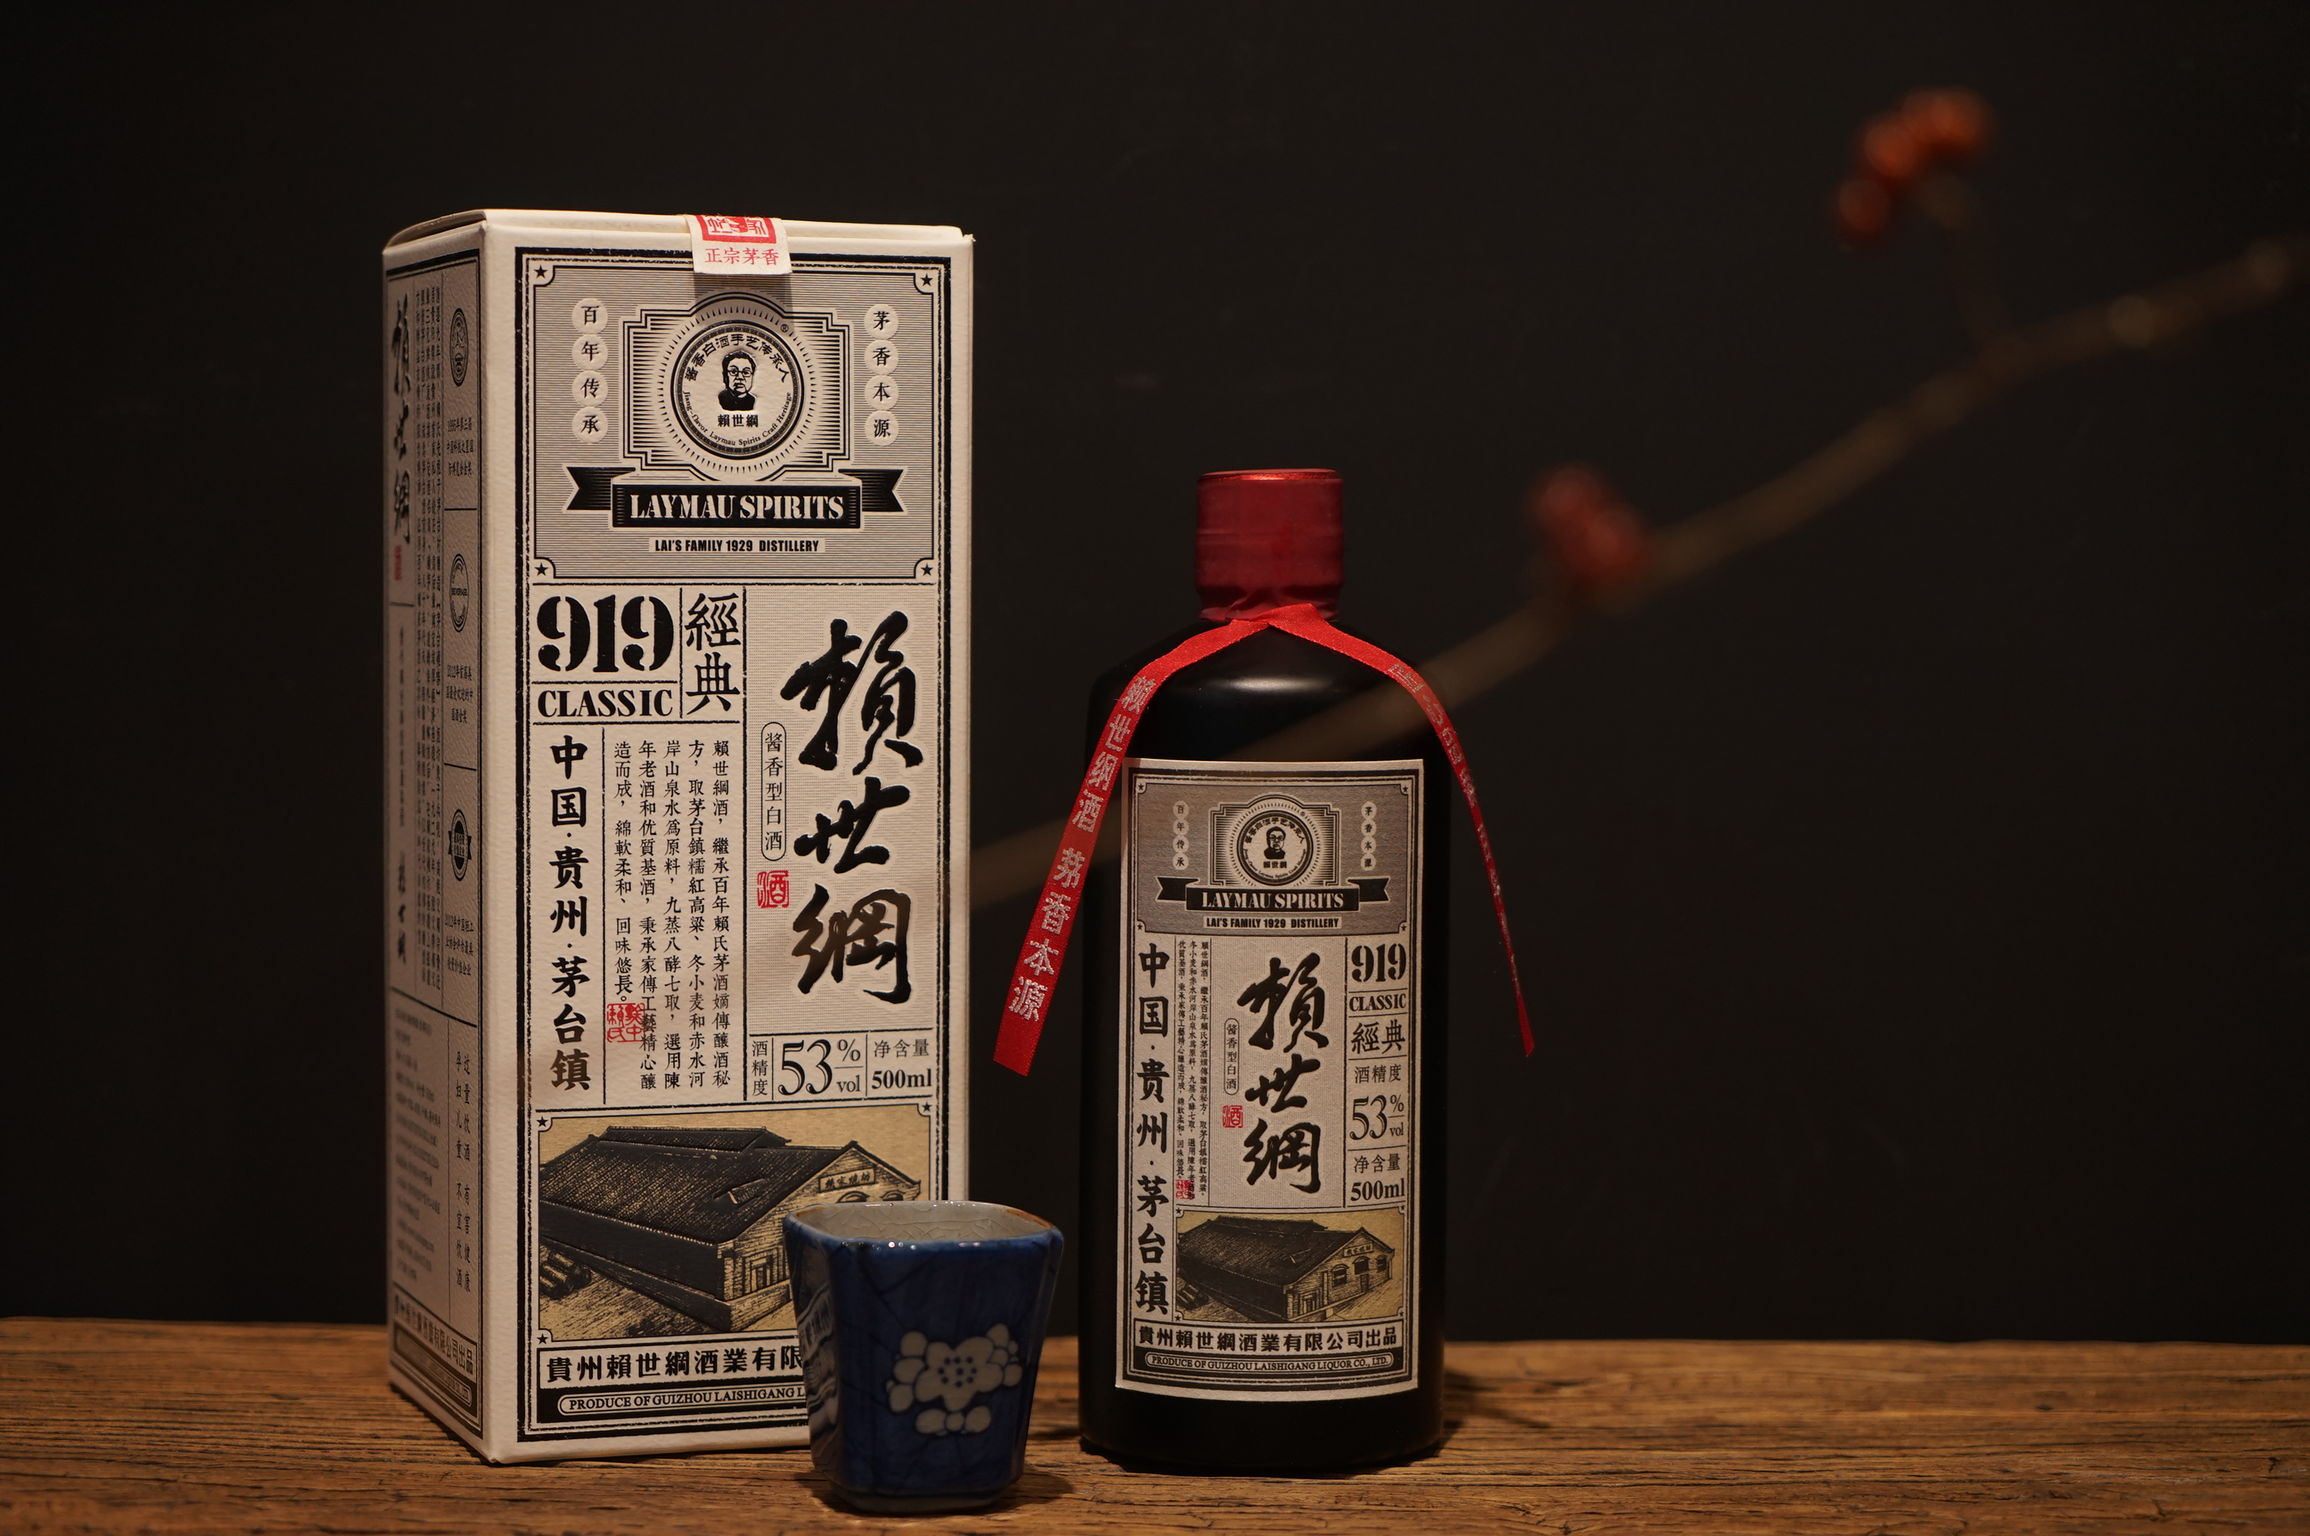 LAI SHI-GANG 919 Classic Liquor